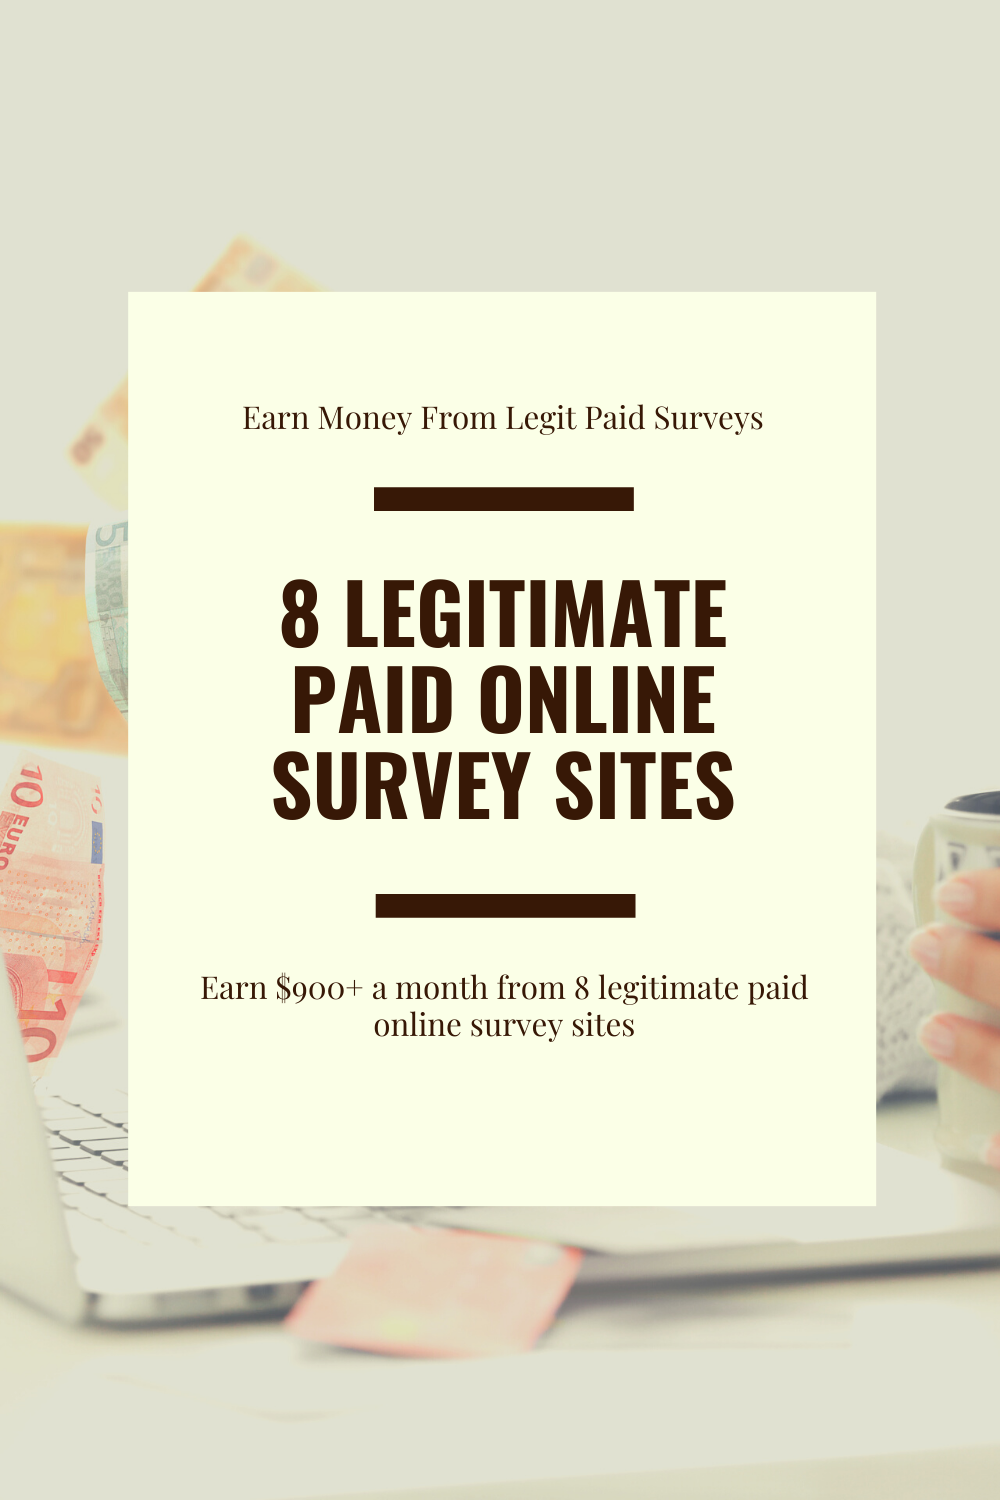  Legitimate paid online survey sites